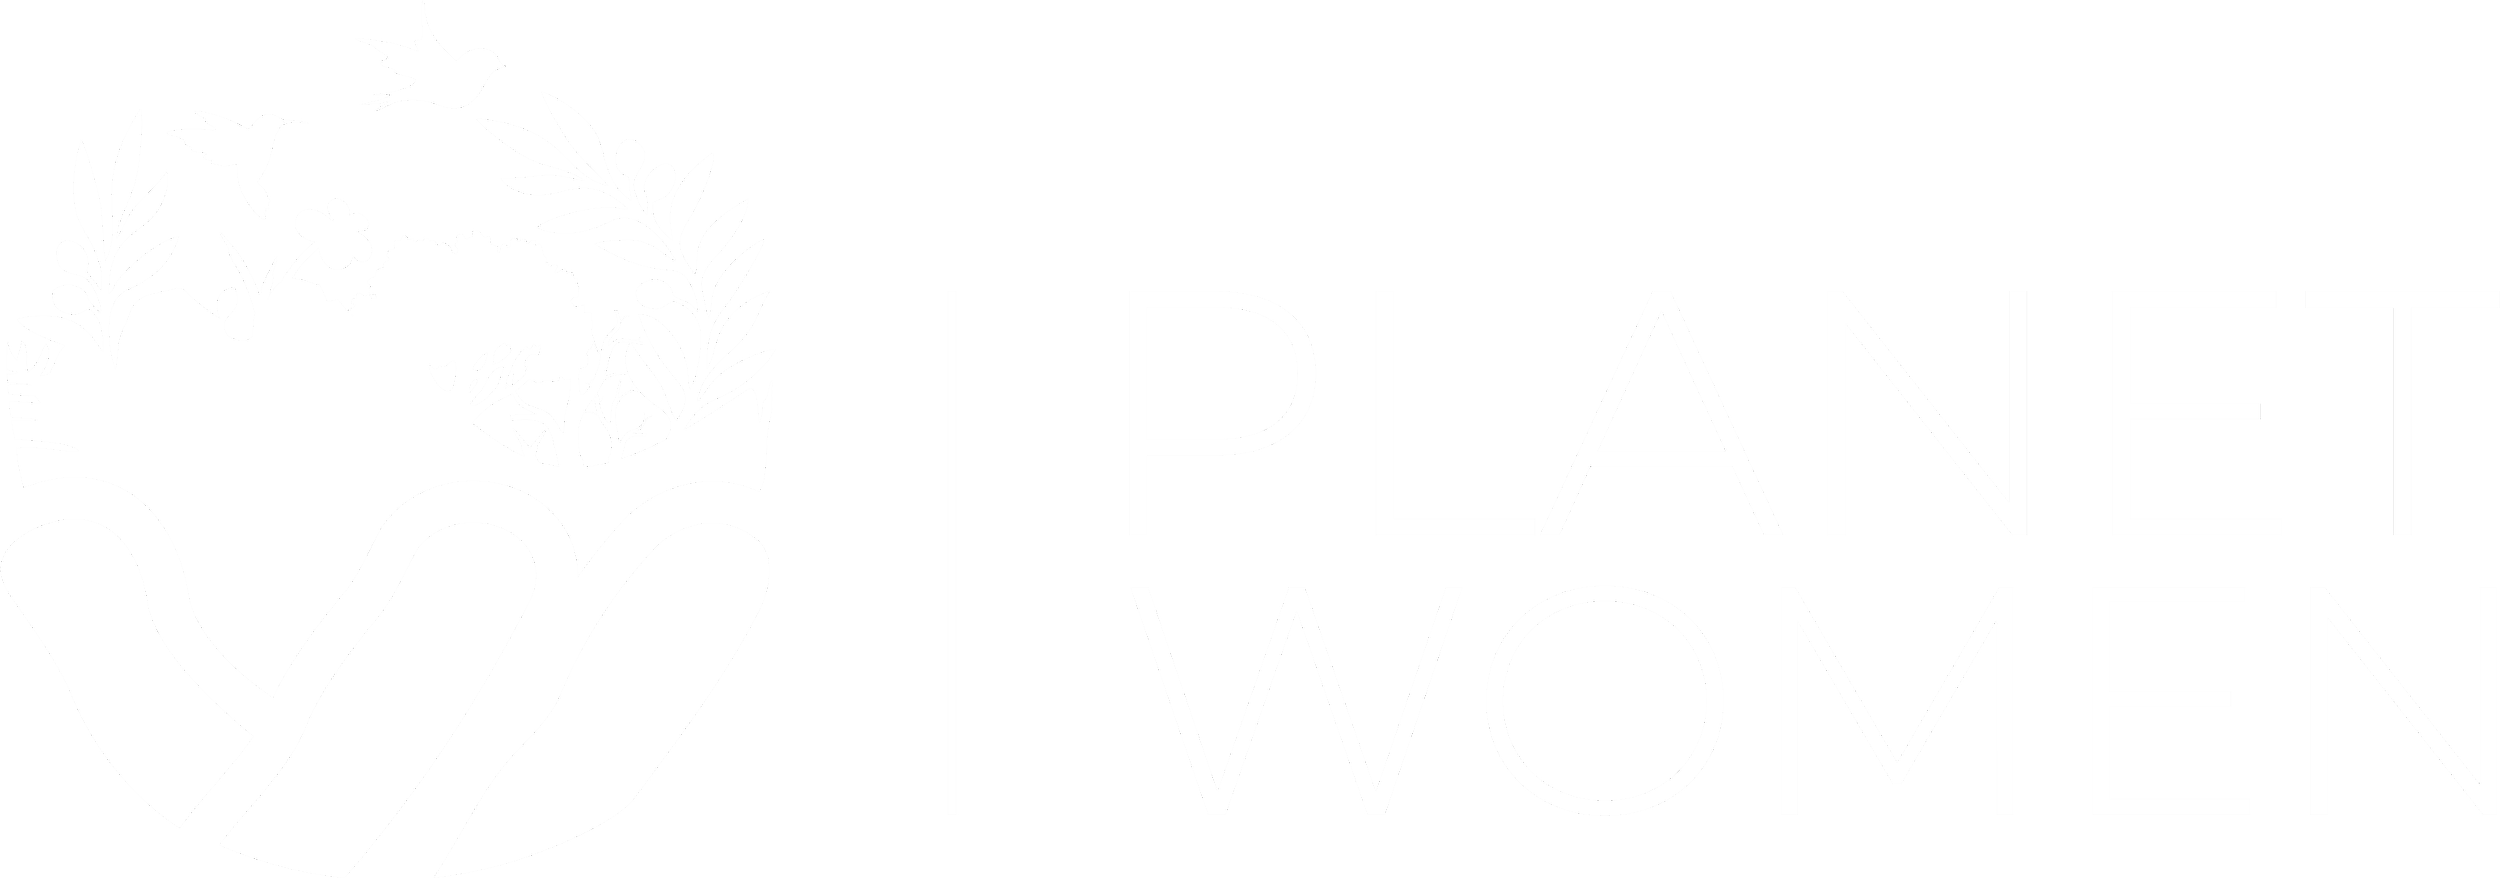 About Planet Women — Planet Women